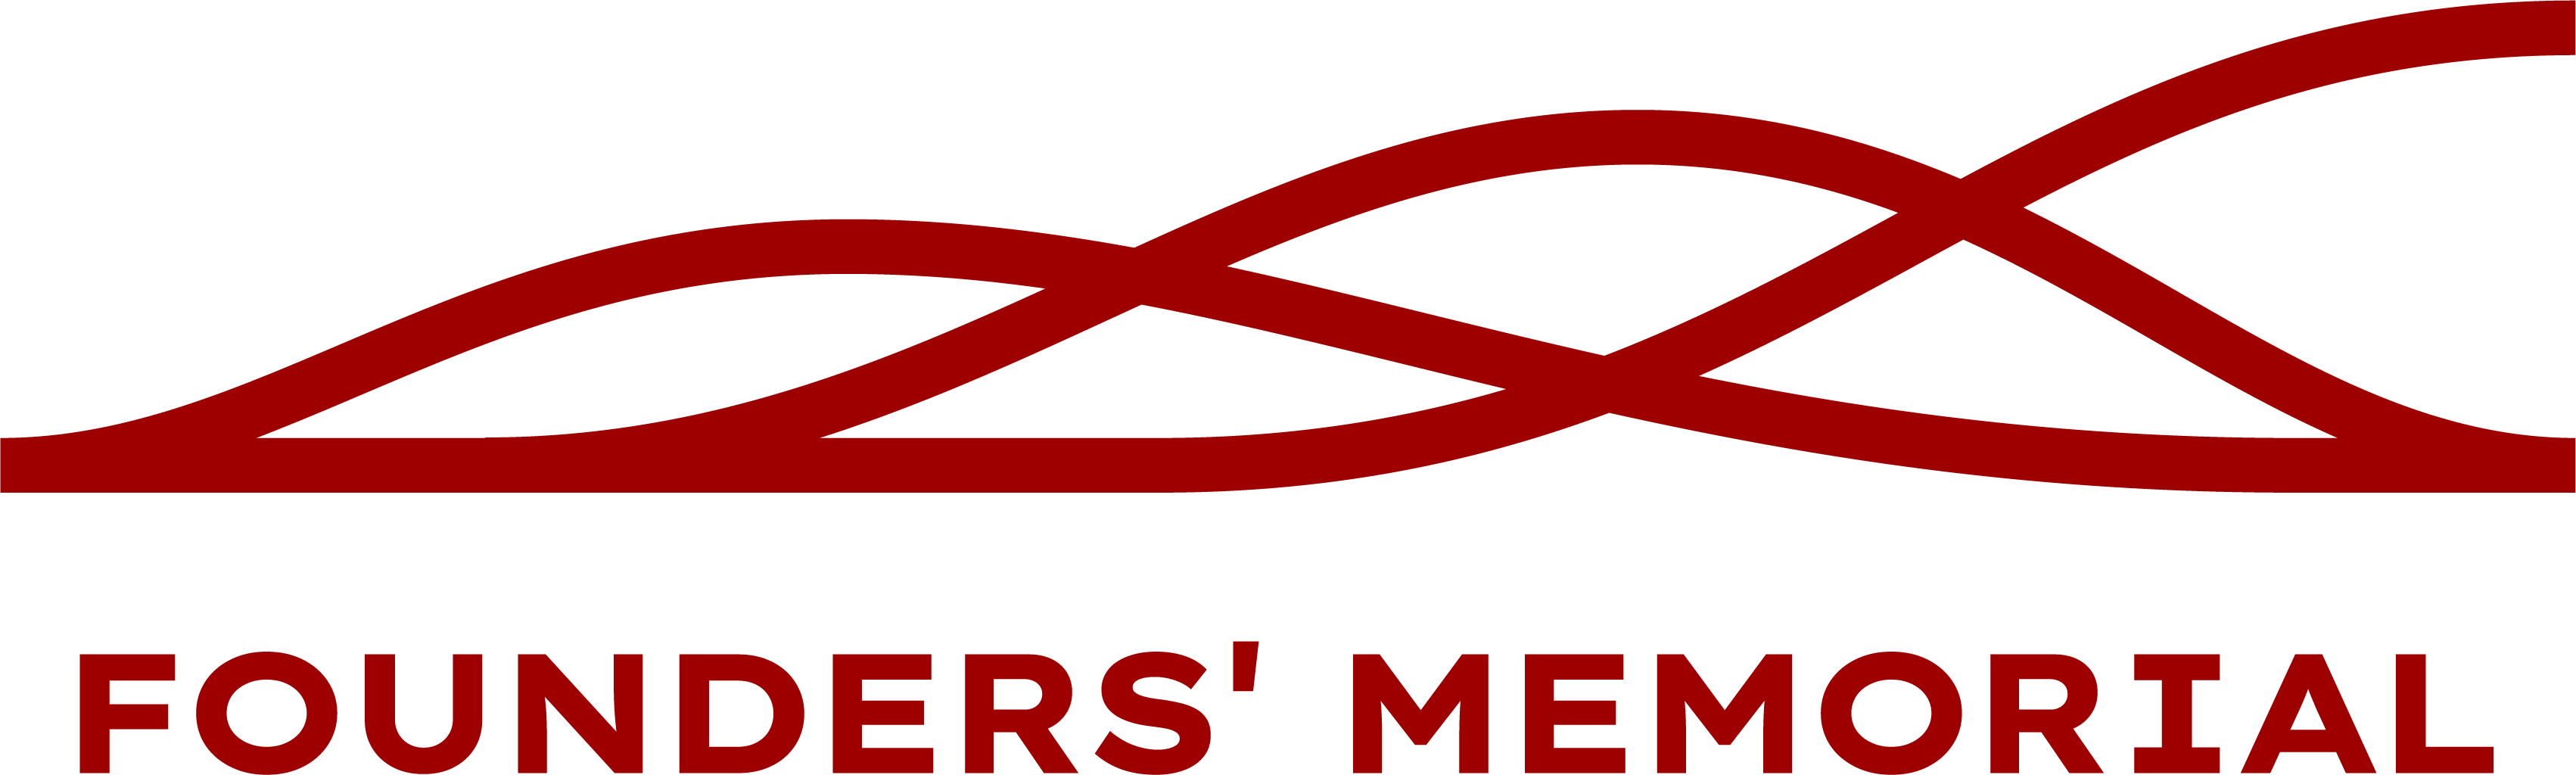 Founders Memorial Logo